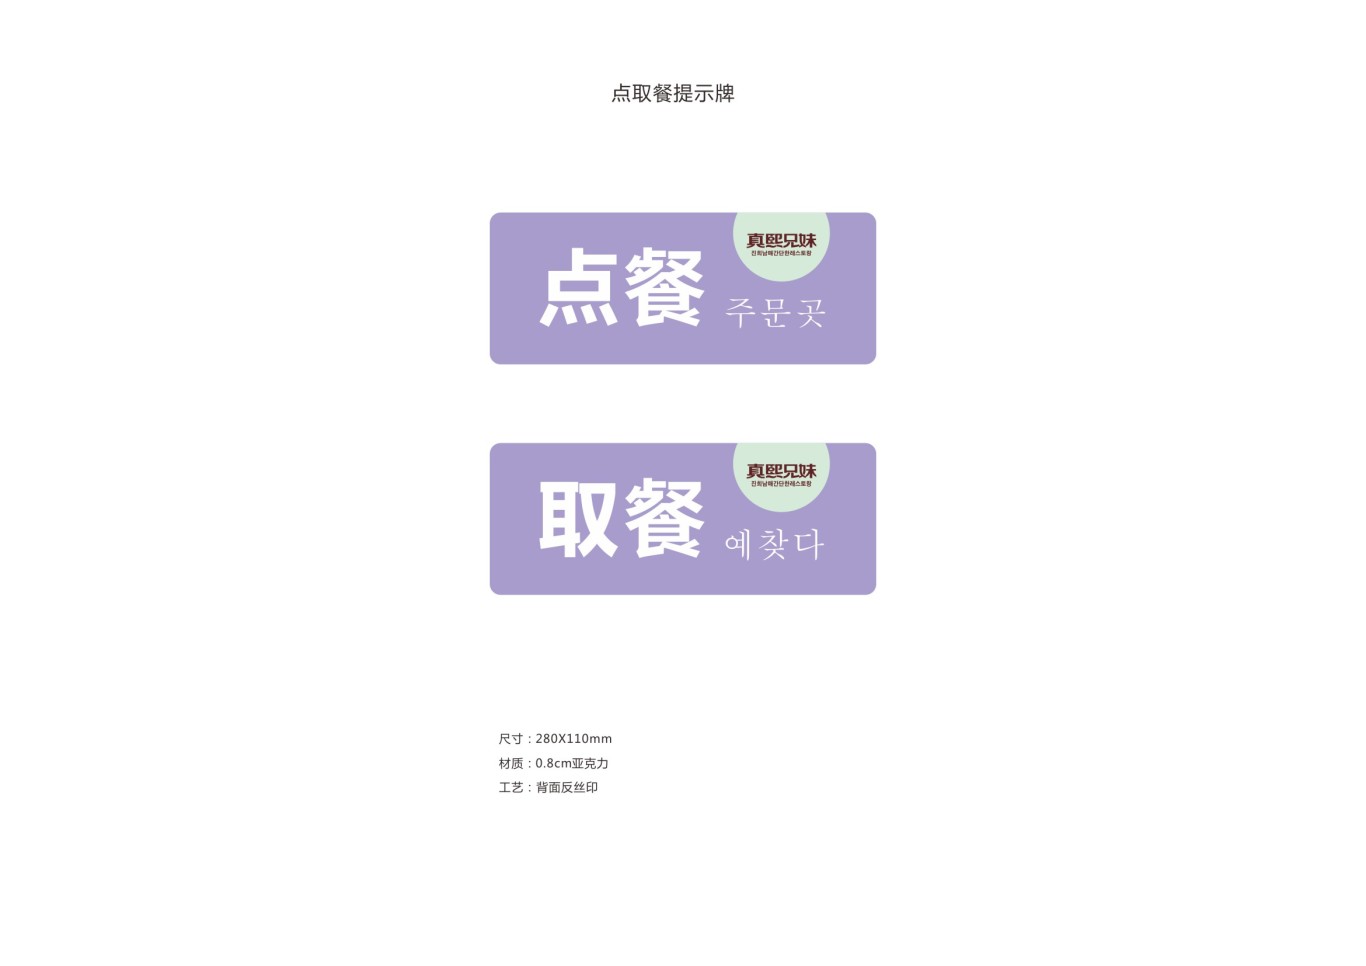 韩式简餐连锁品牌设计图24